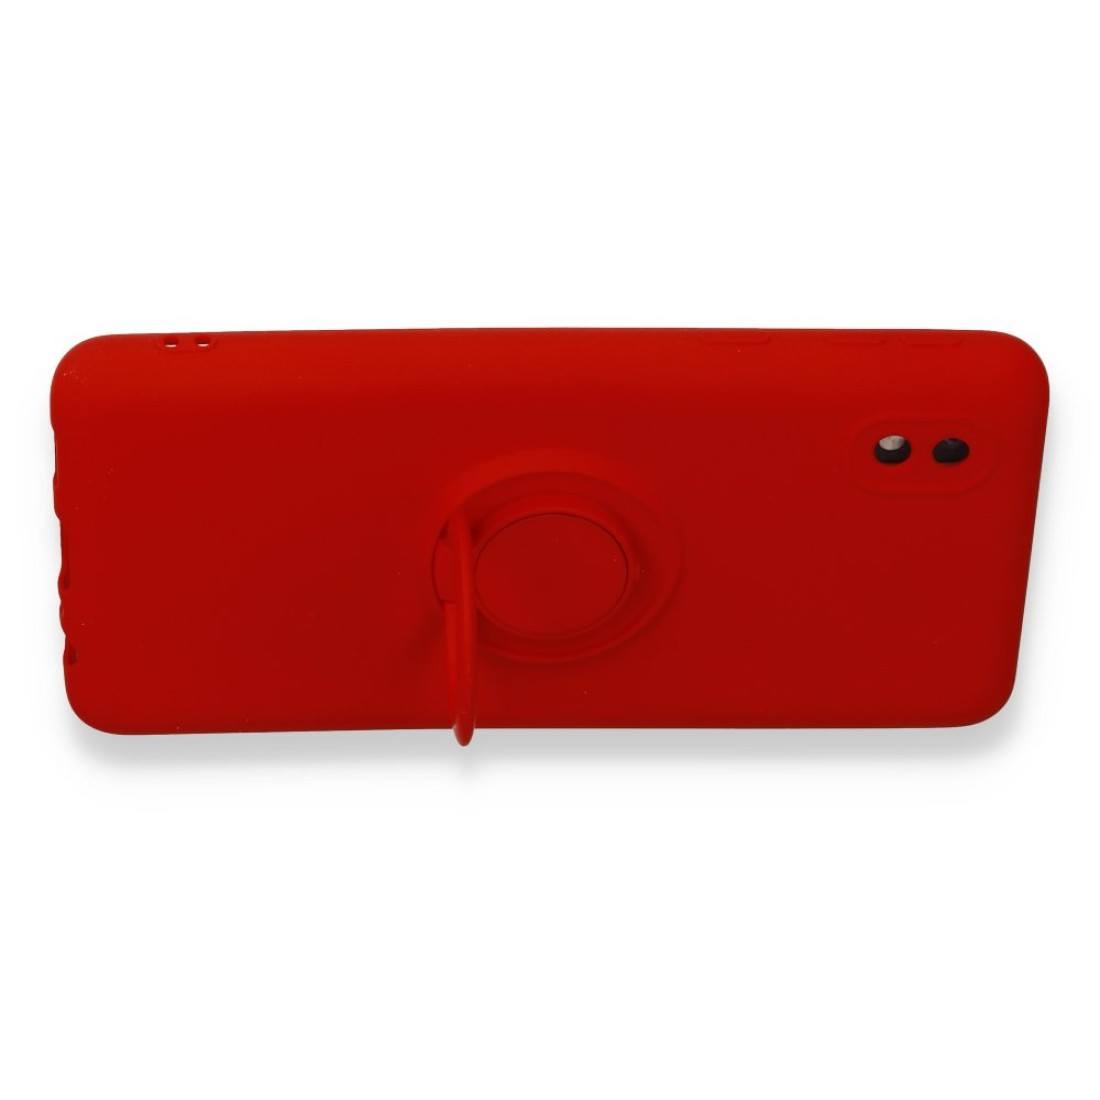 Samsung Galaxy A01 Core Kılıf Viktor Yüzüklü Silikon - Kırmızı